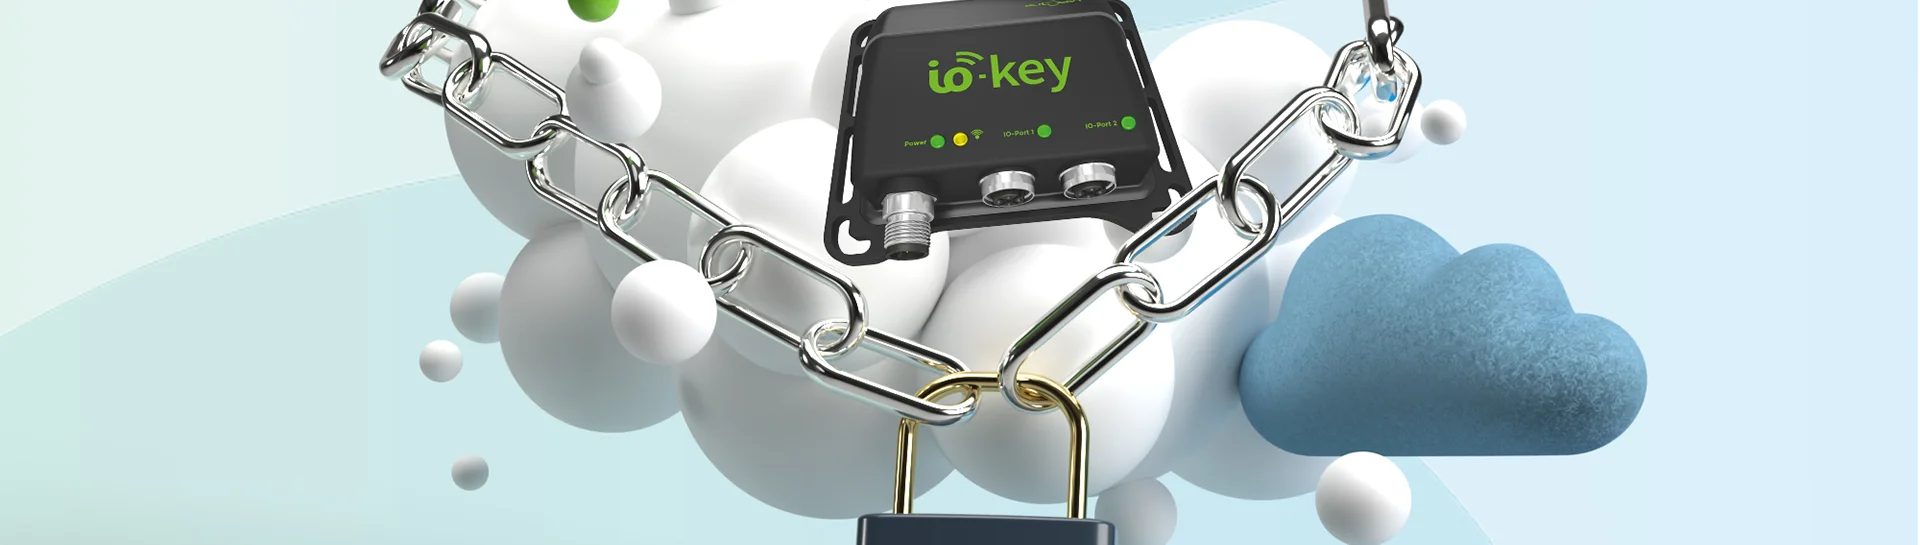 Digitale Sicherheit mit dem io-key®